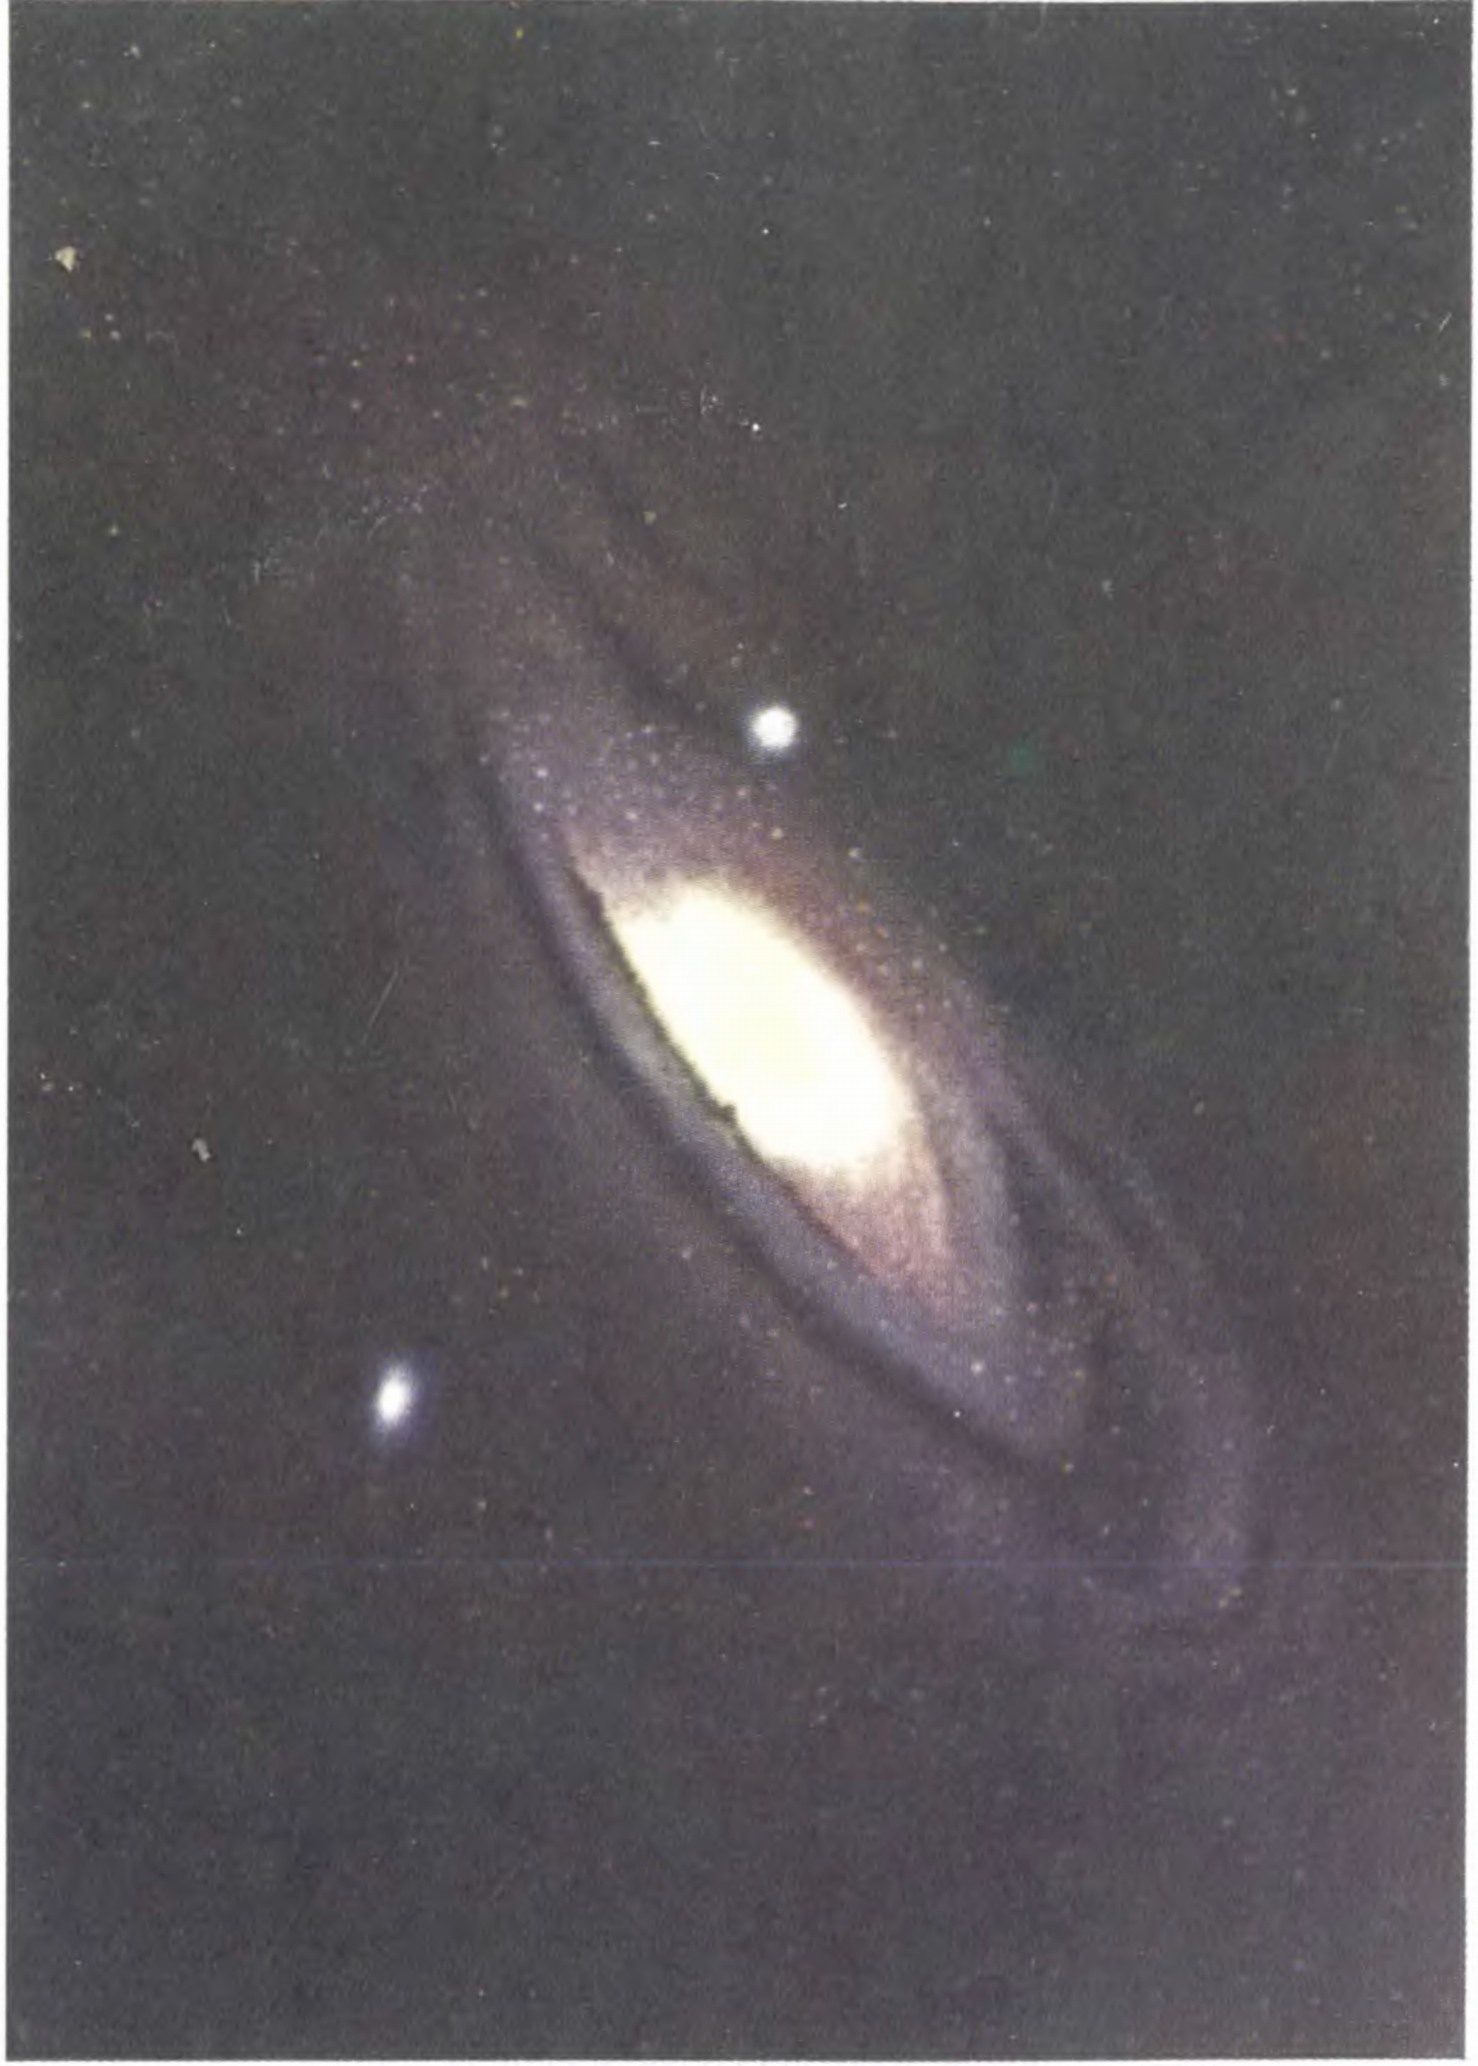 Цветная фотография галактики в созвездии Андромеды, полученная Миллером на 5-метровом телескопе Паломарской обсерватории (США). Хорошо заметна разница между голубоватым цветом спиральных ветвей и красновато-желтым цветом центральной части